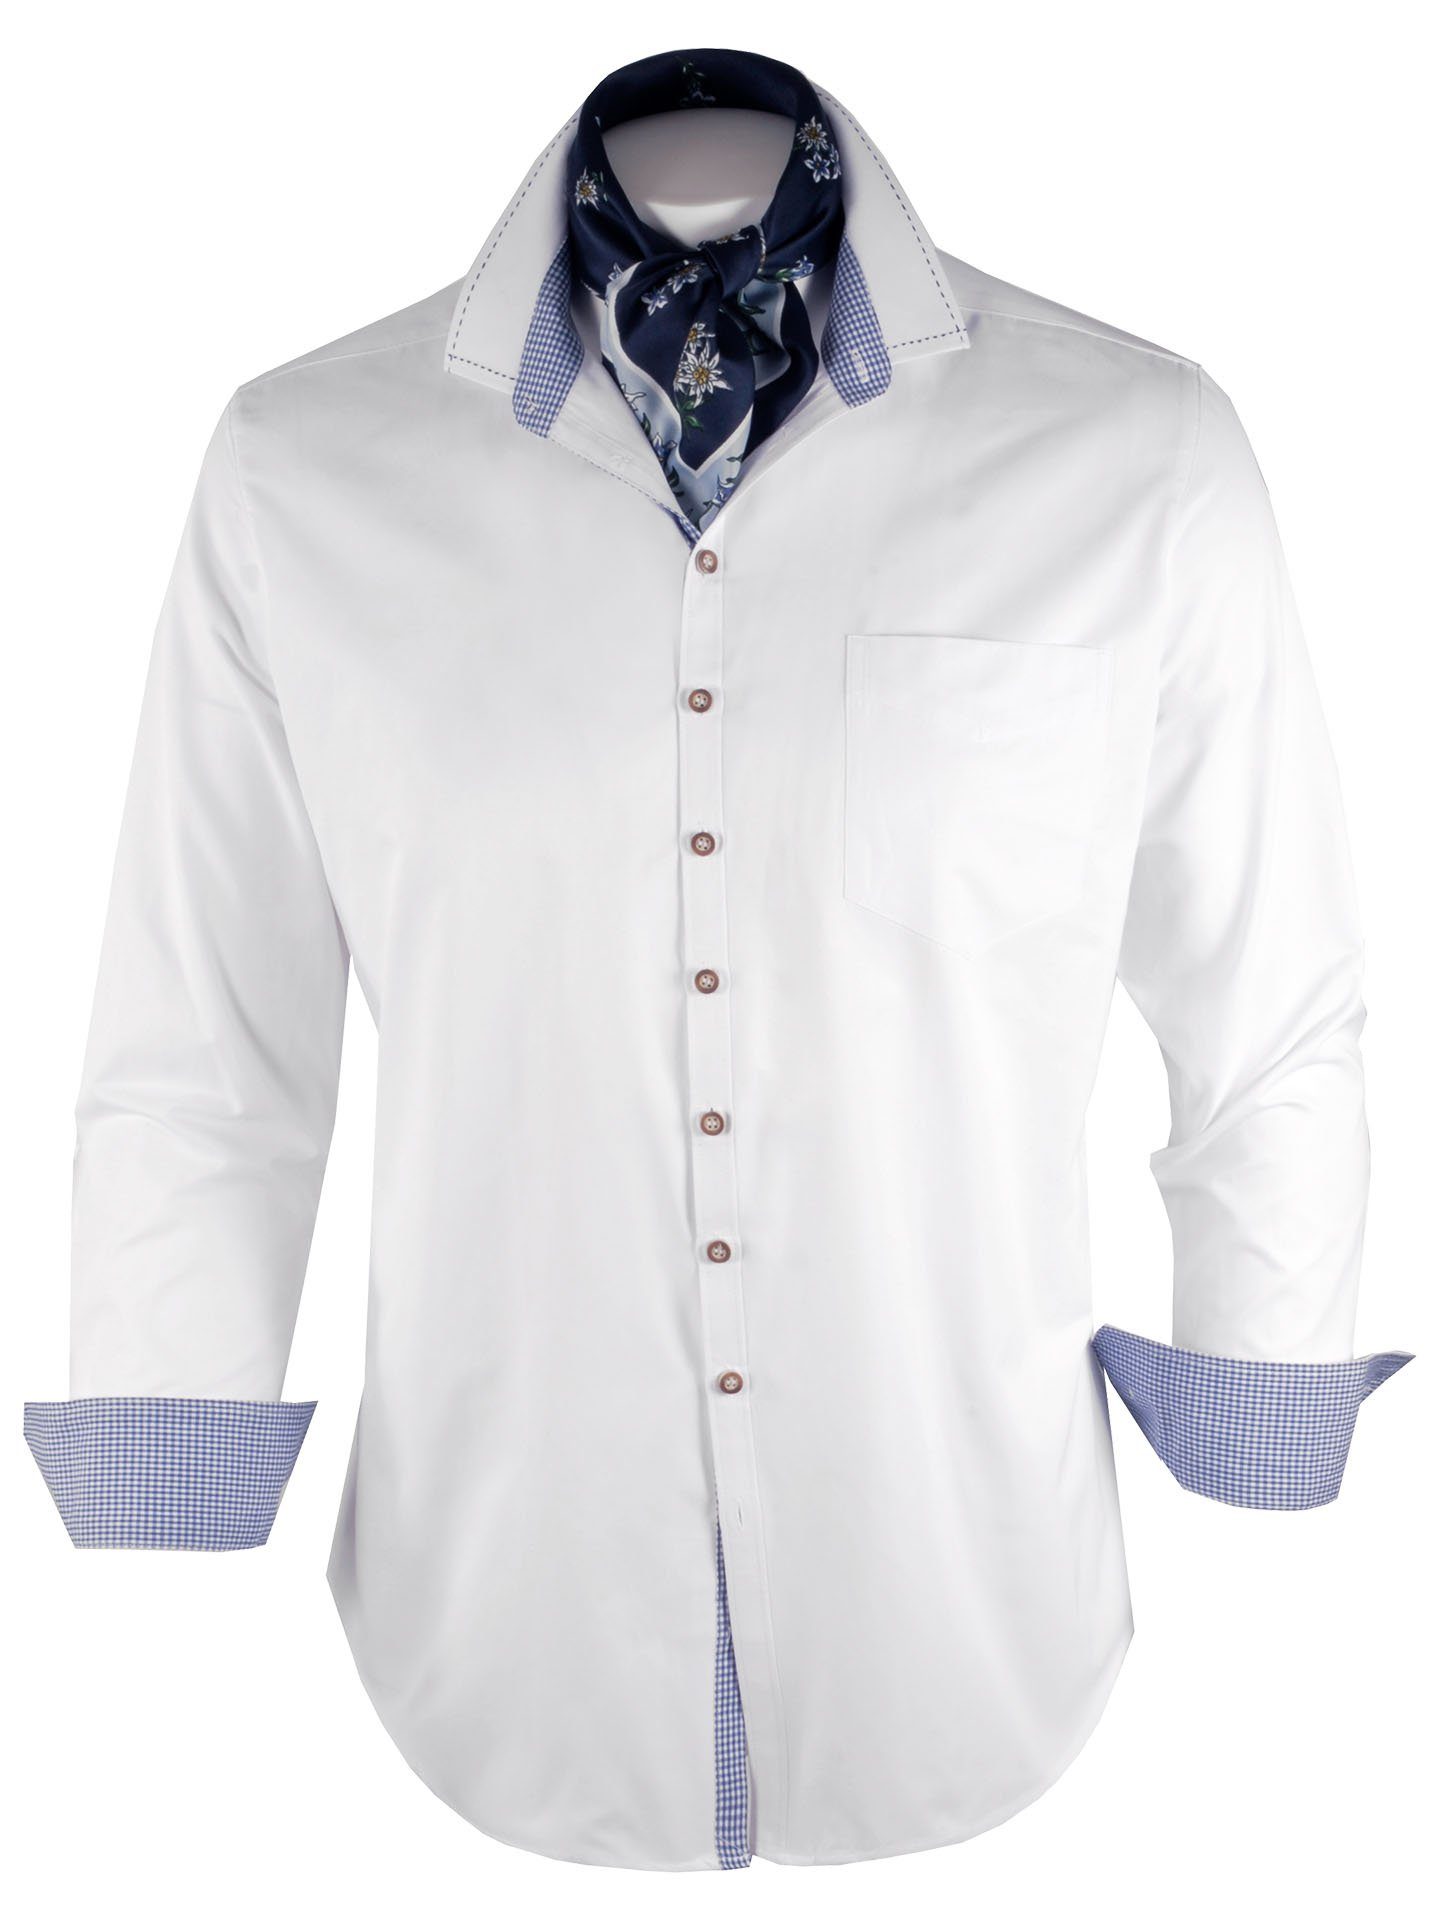 Moschen-Bayern Trachtenhemd Trachtenhemd SLIM FIT Herren Wiesn-Hemd Herrenhemd Langarm Weiß-Blau Slim fit Hemd mit Vichy-Karo | Trachtenhemden